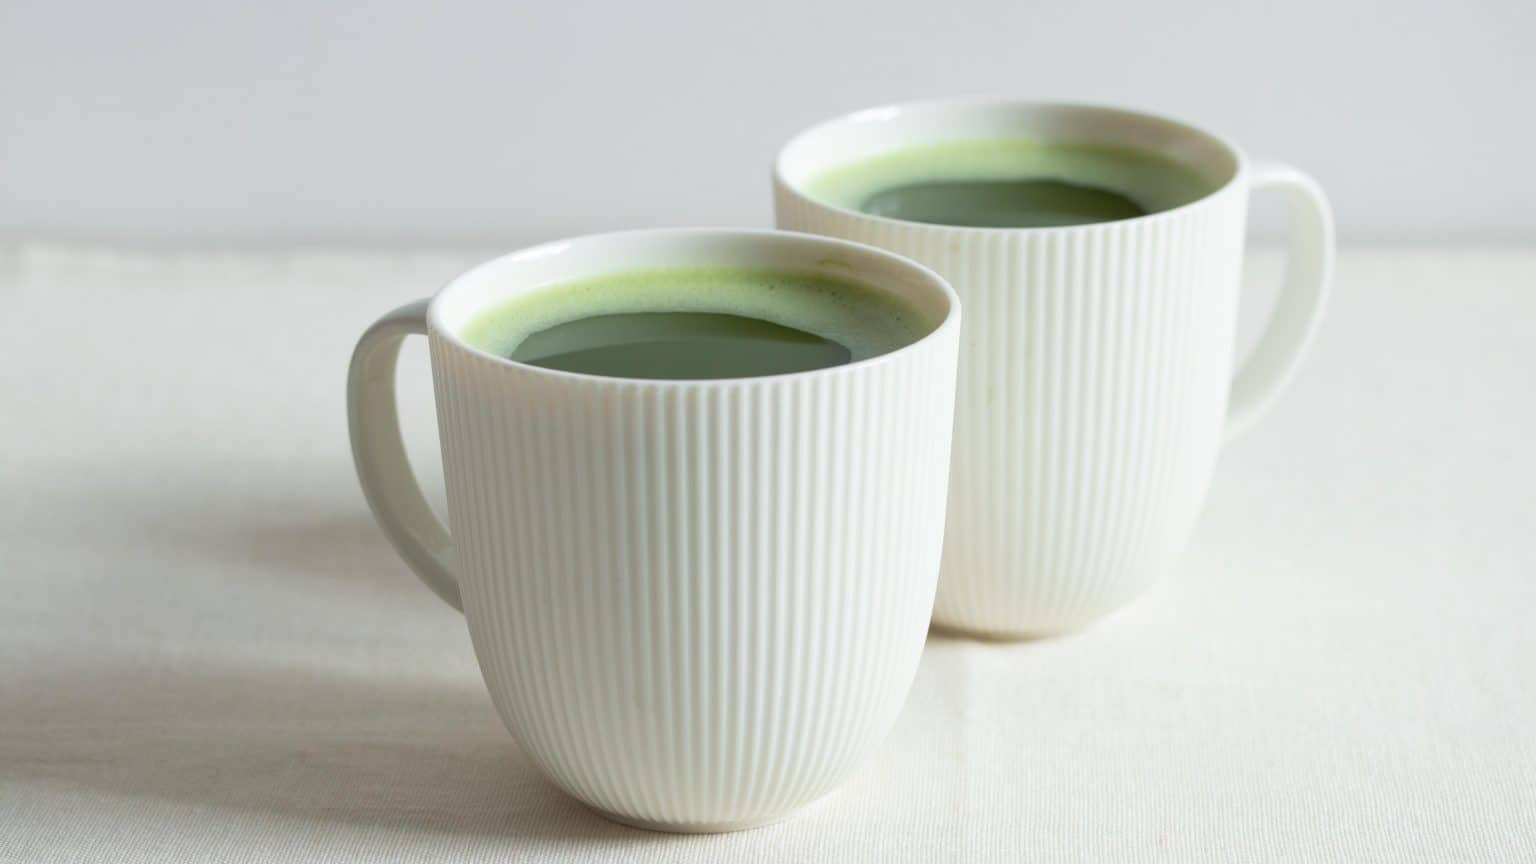 How to make Matcha Tea easily